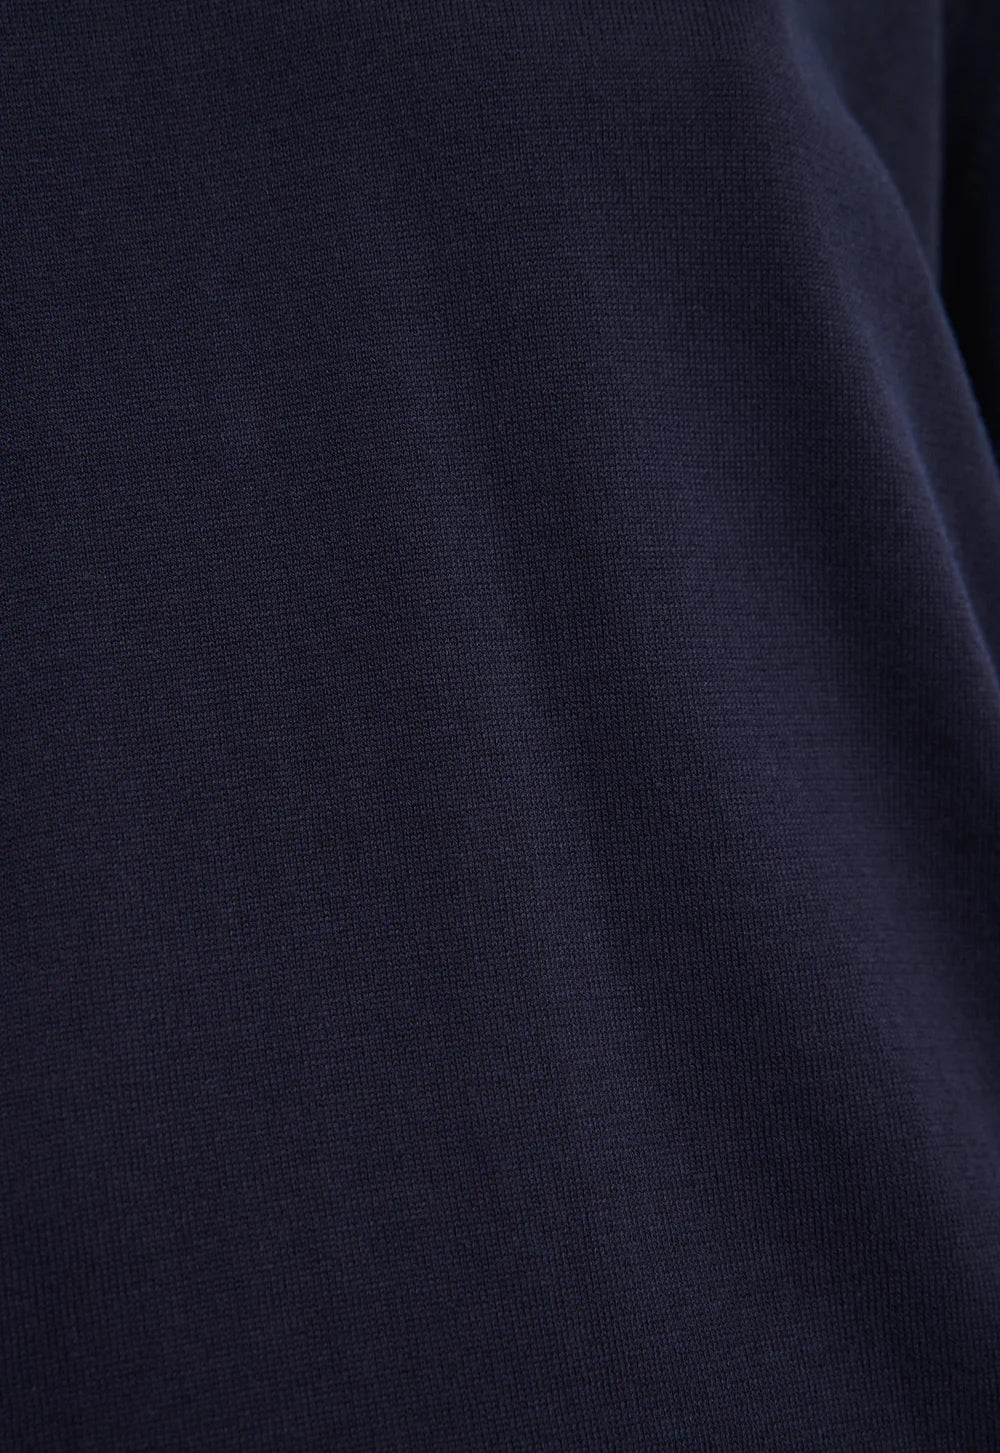 Jac + Jack Finn Italian Cotton Sweater - Darkest Navy